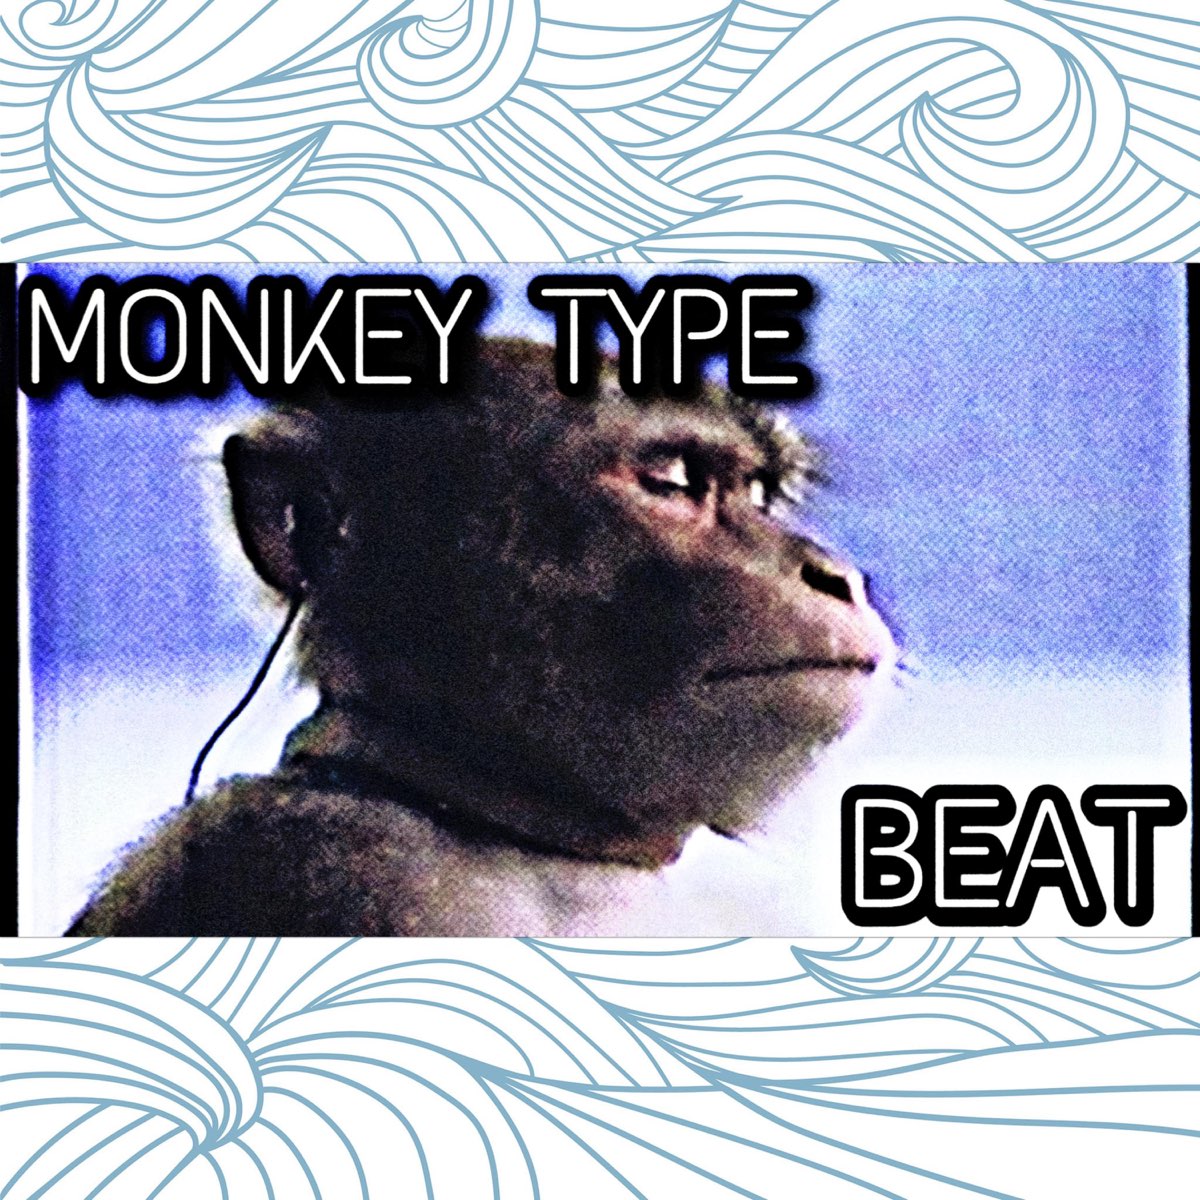 Monkey песня слушать. Monkey Type Beat. Monkey песня. Monkey Type Beat Мем. Monkey Type logo.